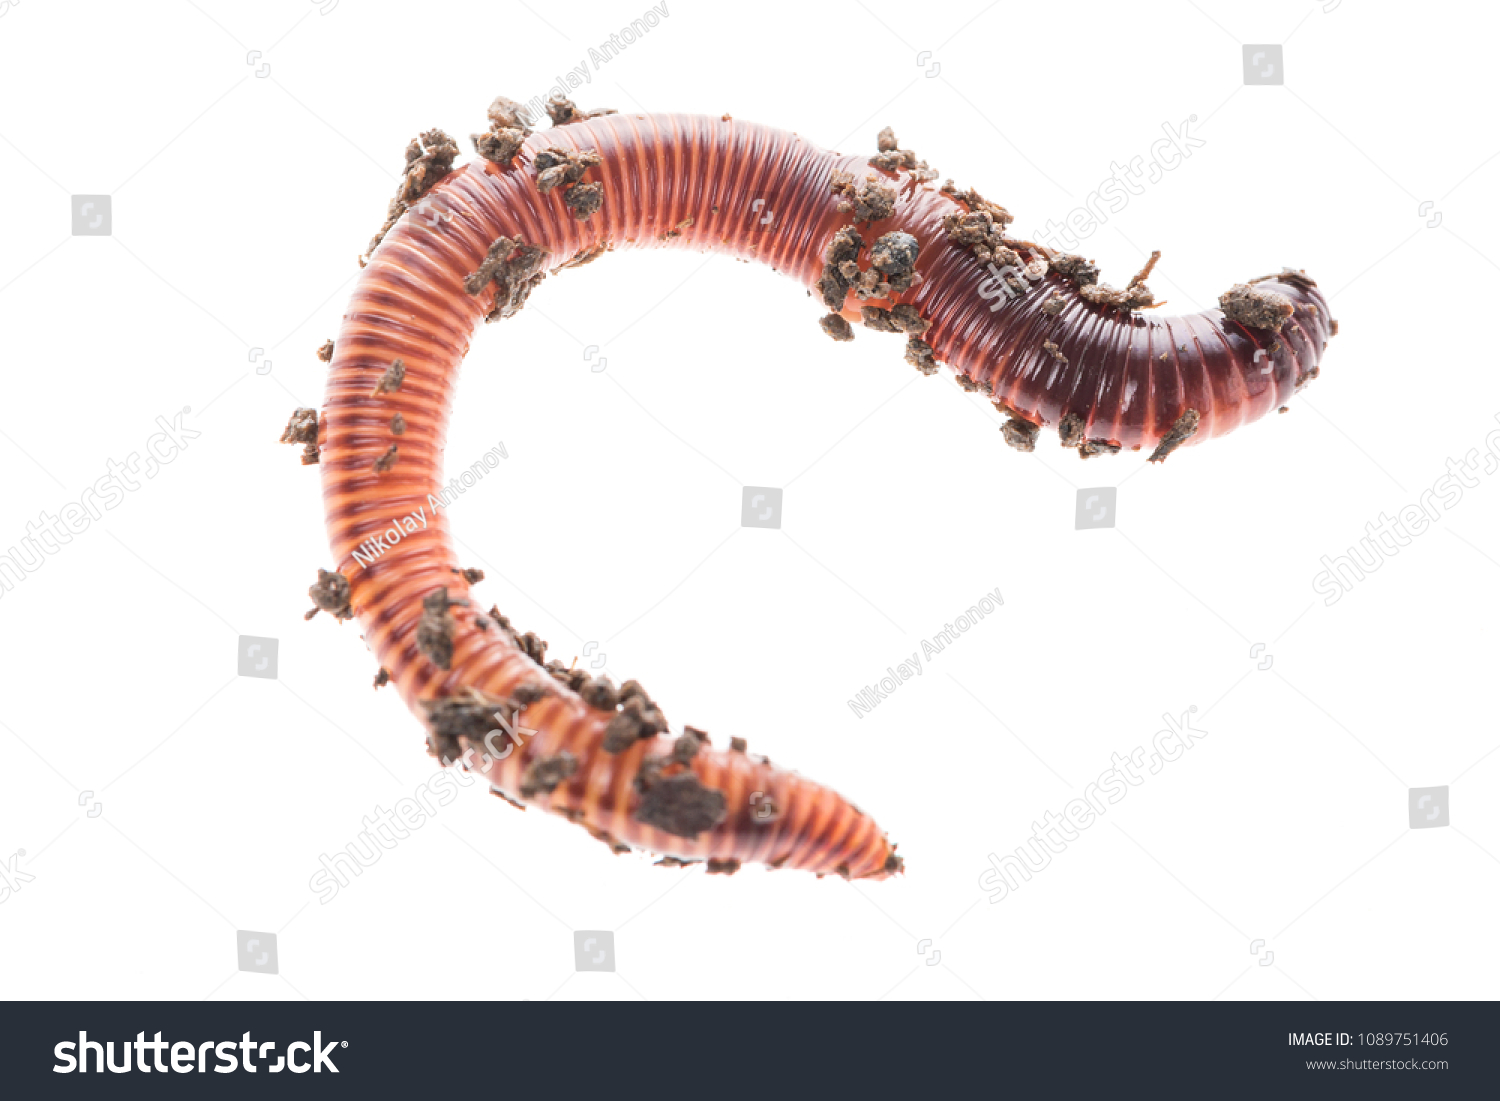 肥料に赤い虫のデンドロベナを使ったマクロショット 白い背景にミミズの生きた釣り餌 の写真素材 今すぐ編集